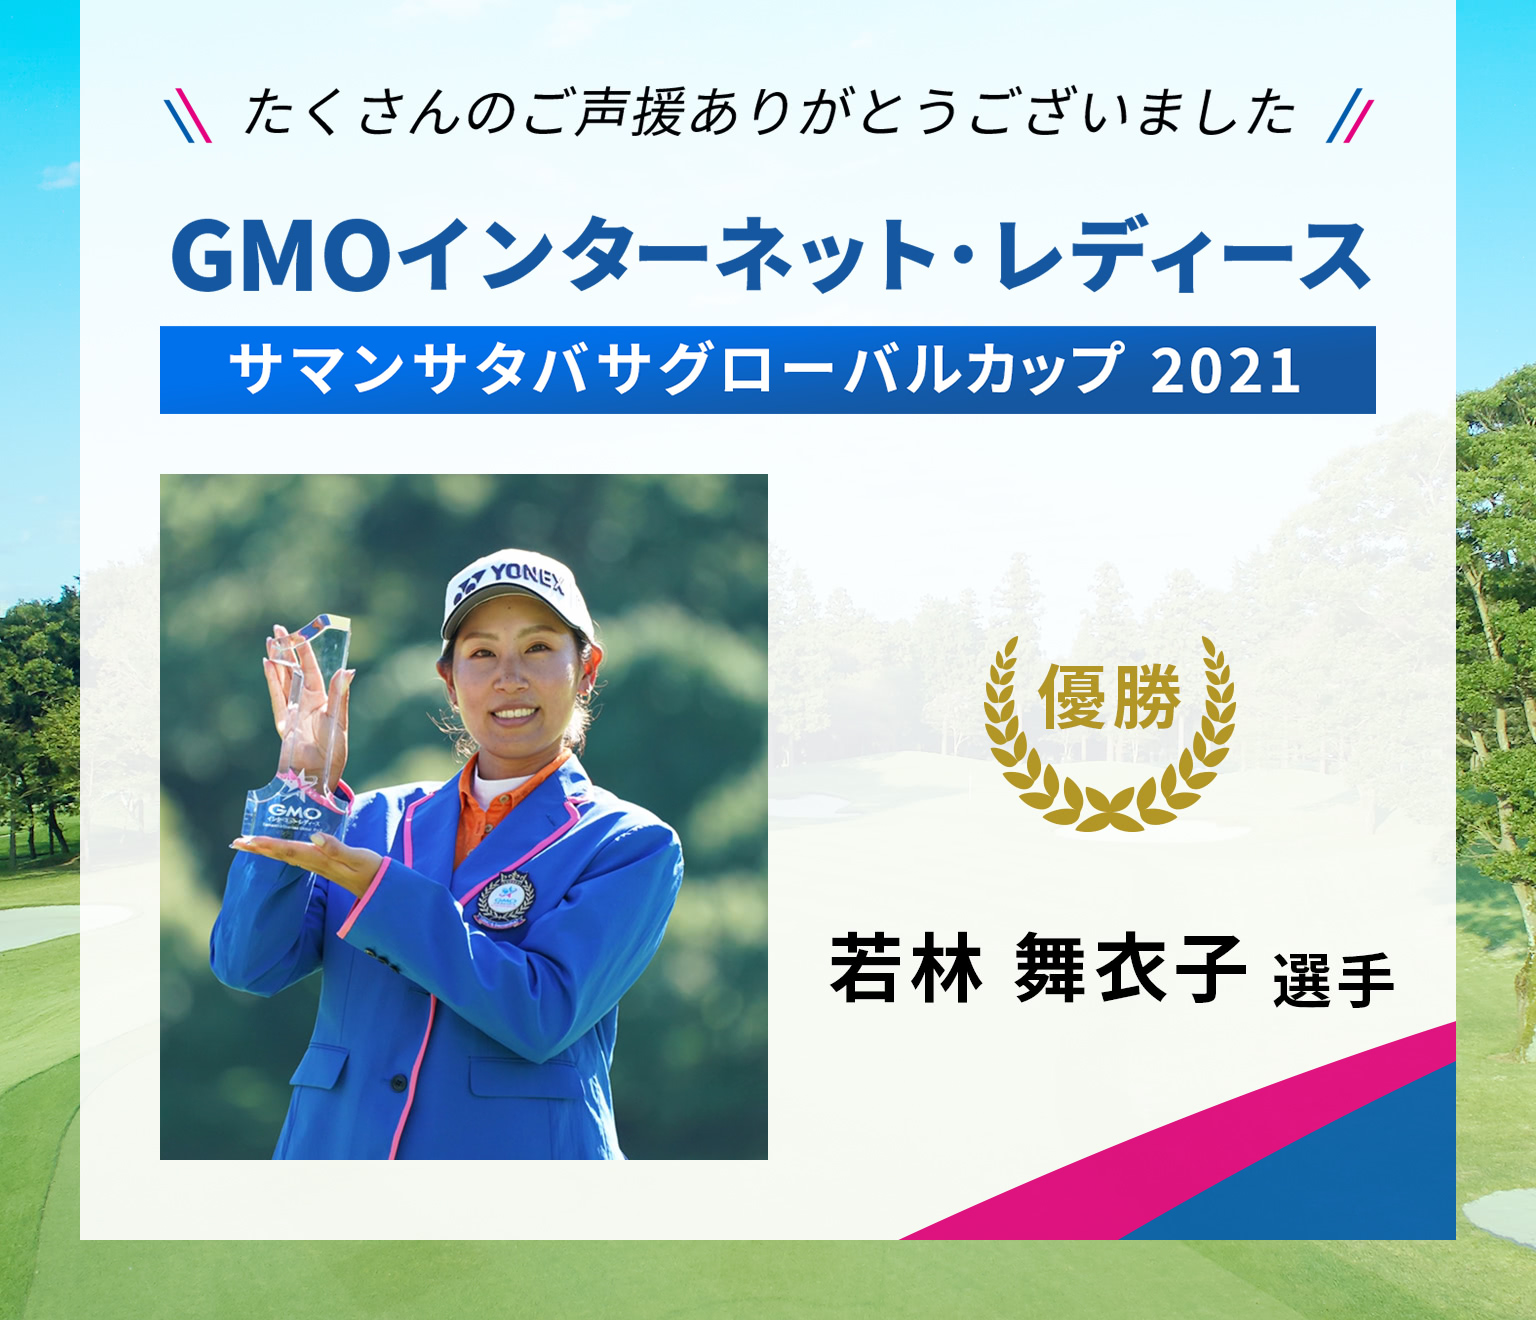 GMOインターネット・レディース サマンサタバサグローバルカップ 2021 